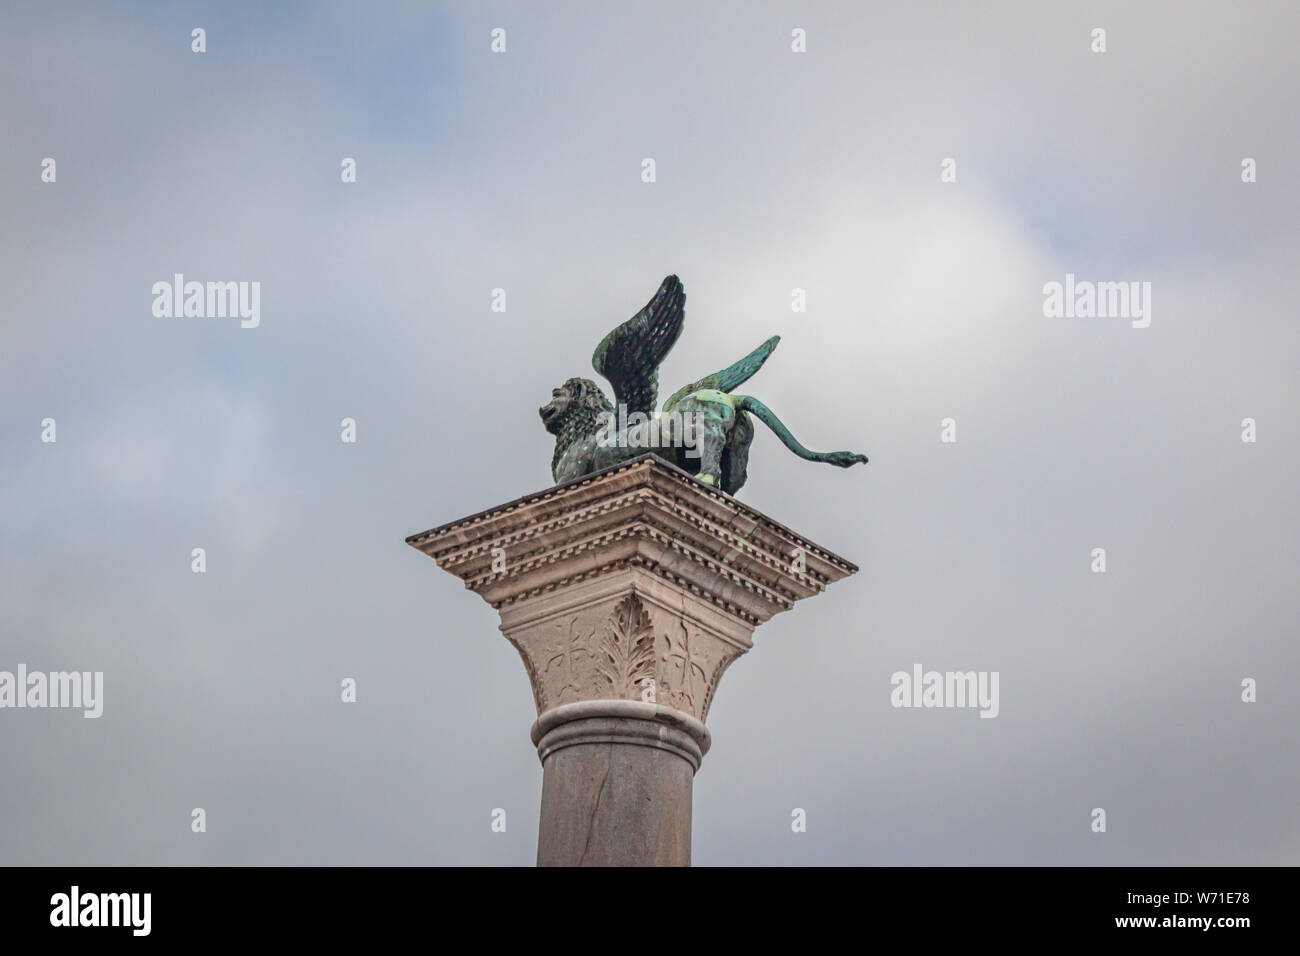 Le Lion de Venise est un ancien lion ailé en bronze sculpture de la Piazza San Marco de Venise, Italie Banque D'Images